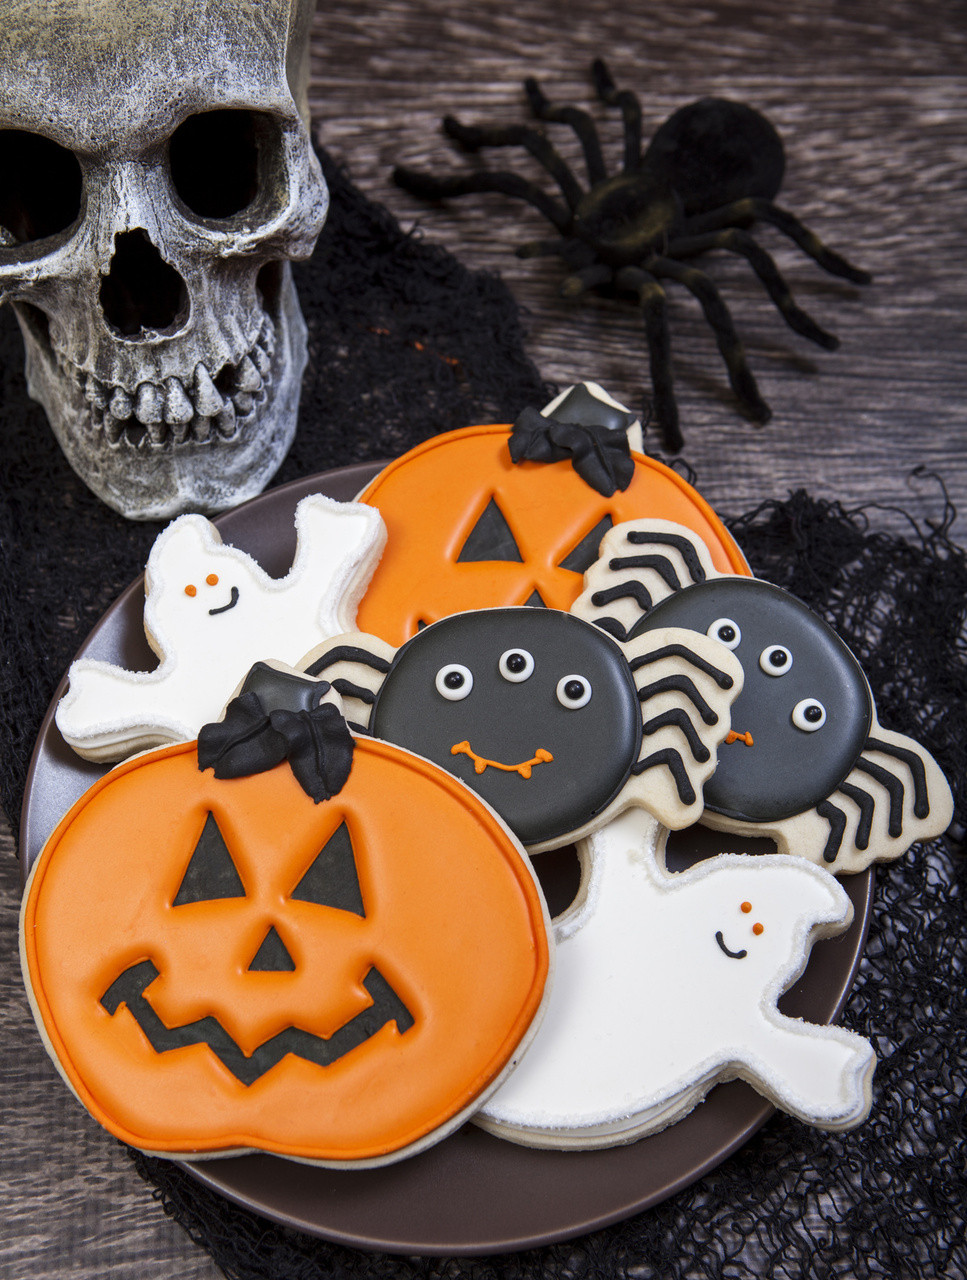 Halloween Cookies Pictures
 Spooky Cookie Halloween Cookie Decorations